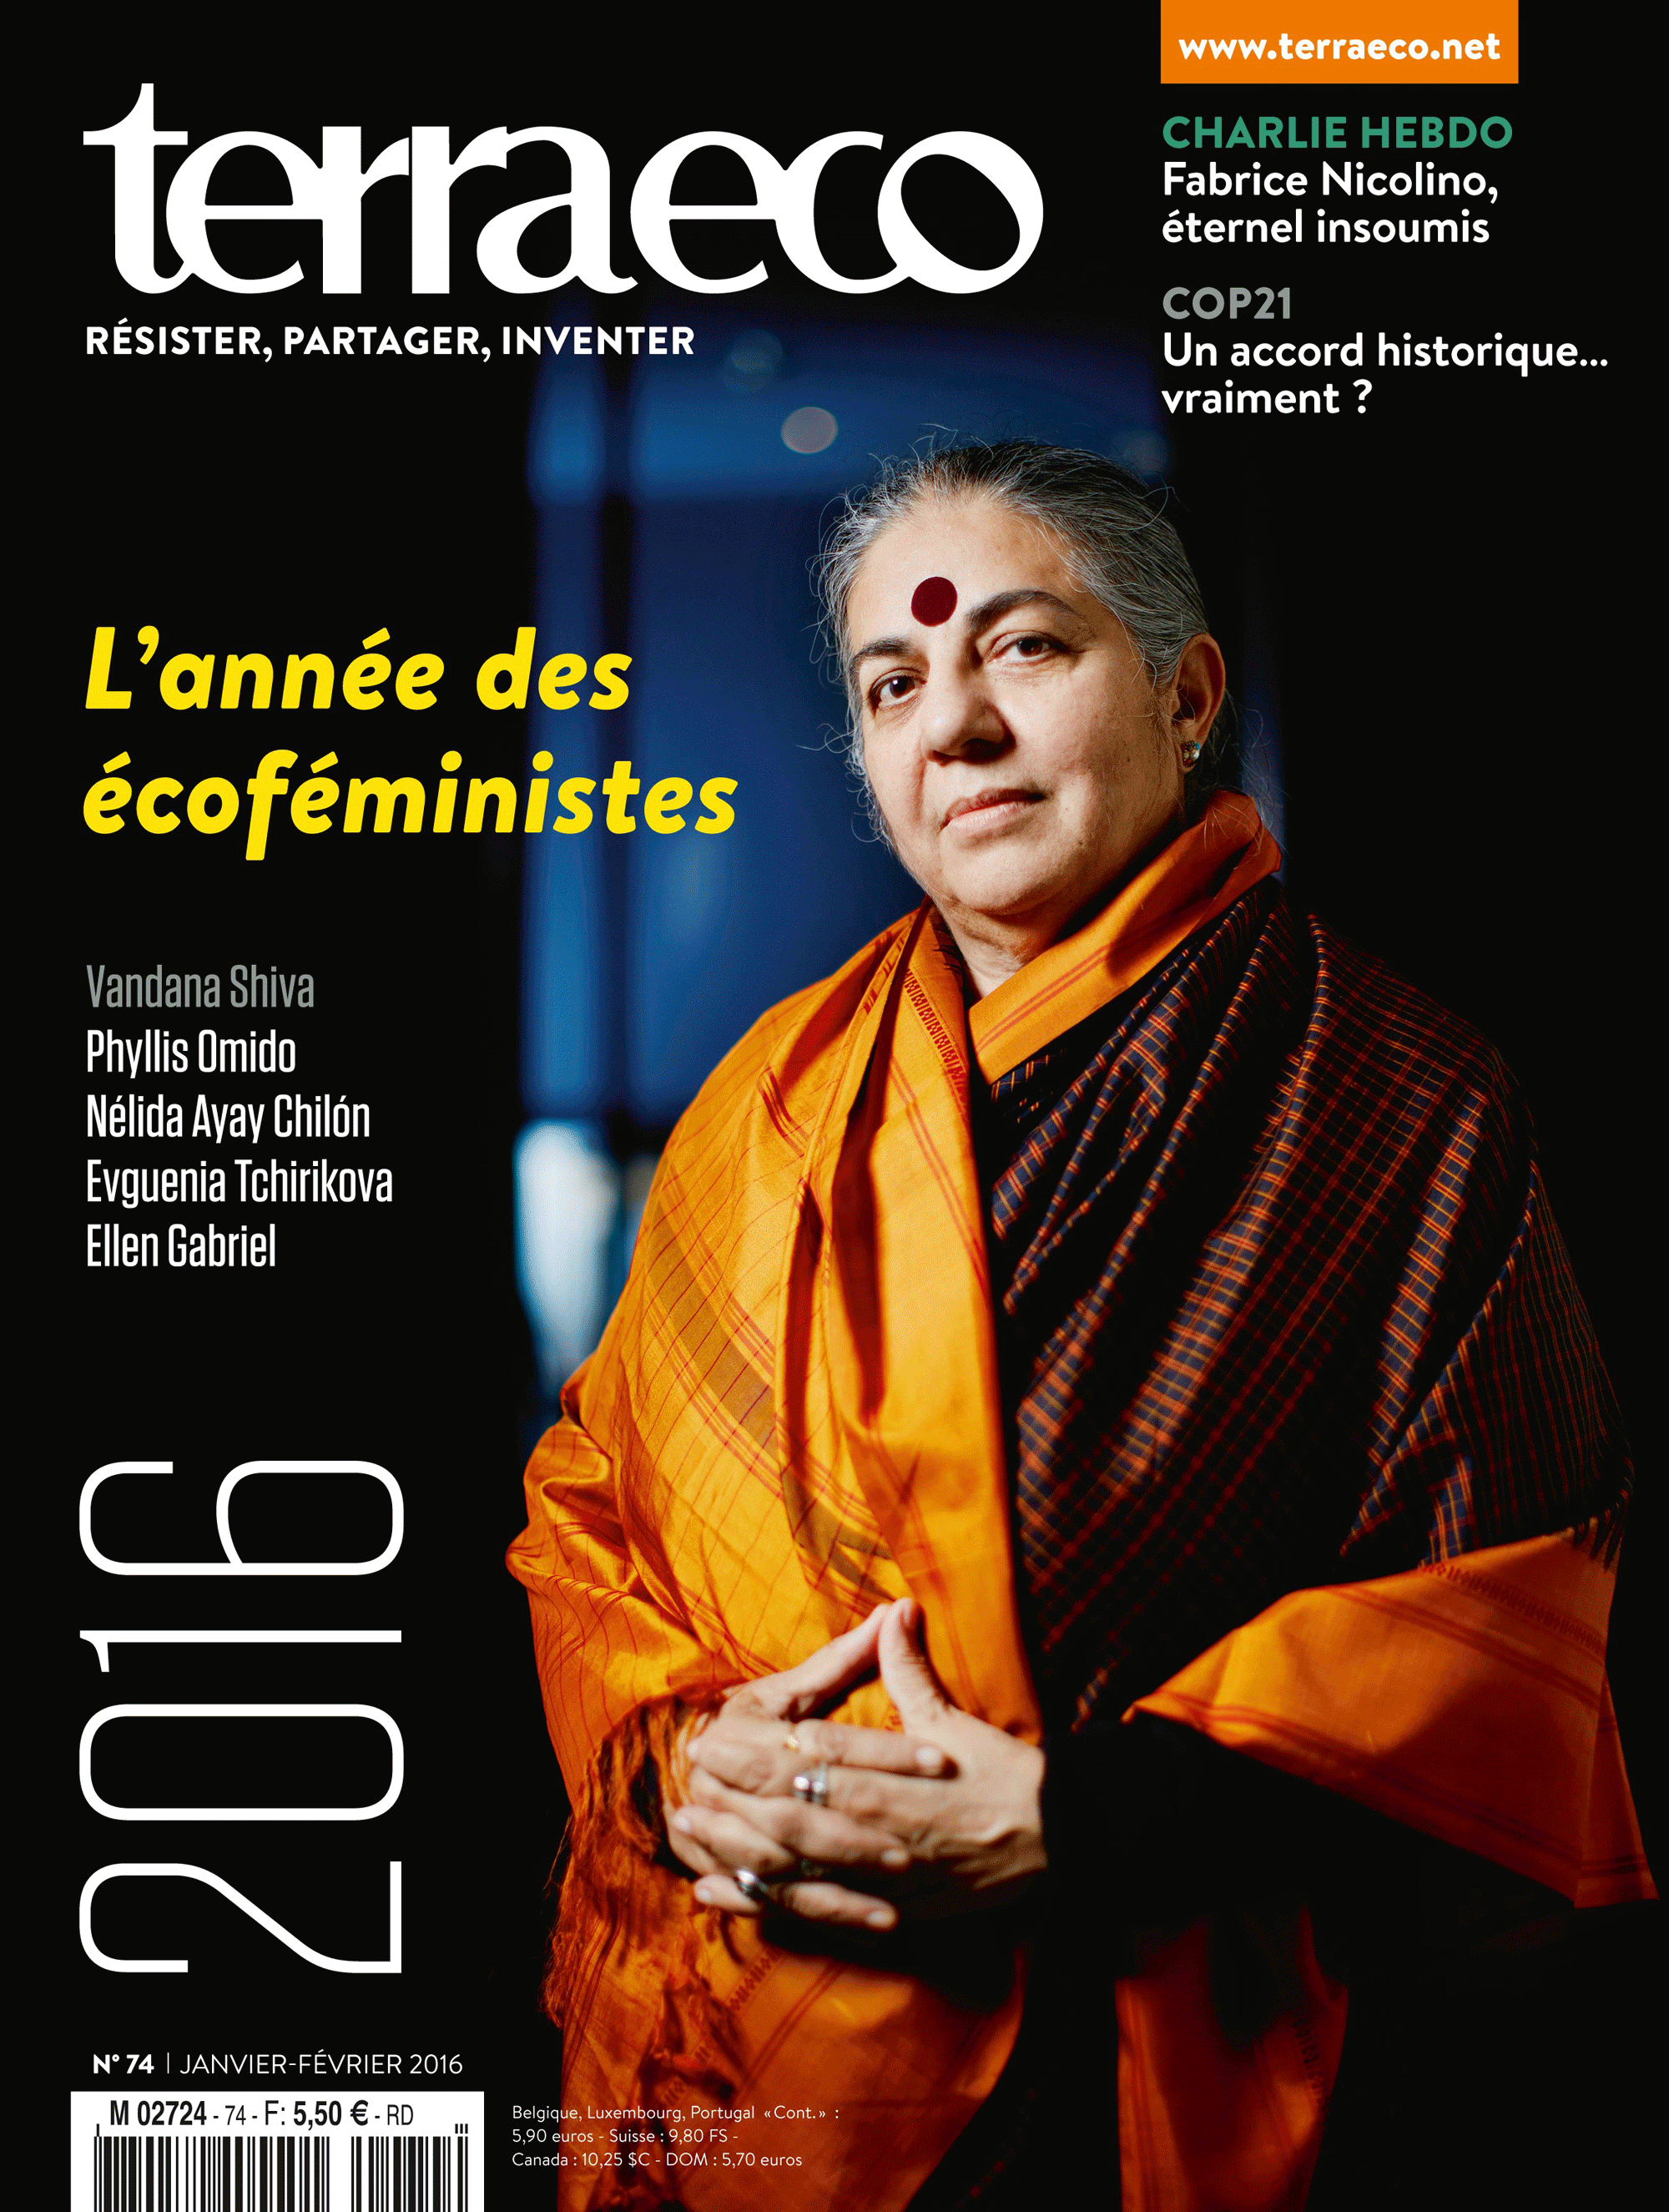 La couverture de "Terra Eco" du mois de Janvier-Février 2016 [Terraeco.net]